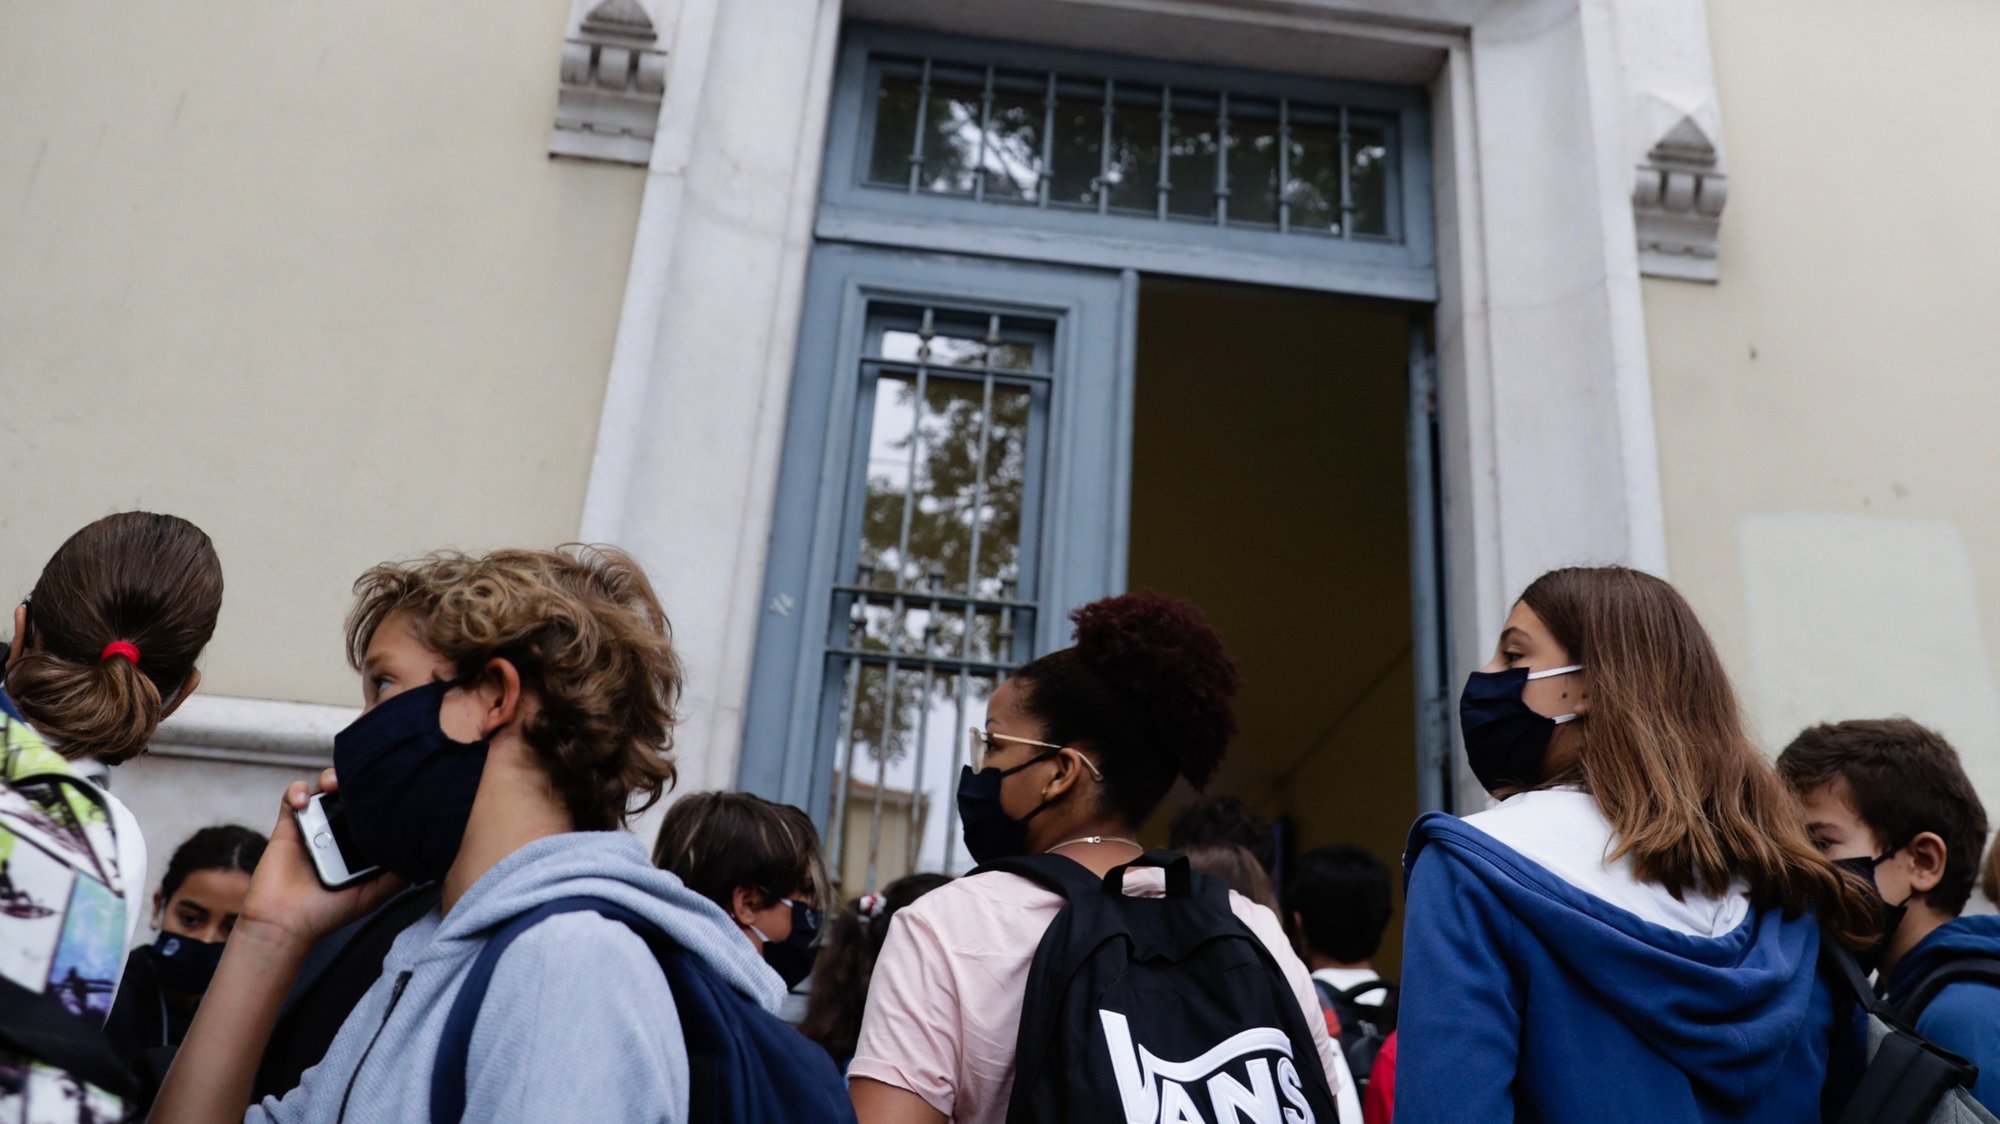 Os mais de mil alunos da Escola Secundária Pedro Nunes têm de entrar todos os dias por uma porta única no primeiro dia de aulas em plena pandemia de Covid-19, em Lisboa, 17 de setembro de 2020. TIAGO PETINGA/LUSA